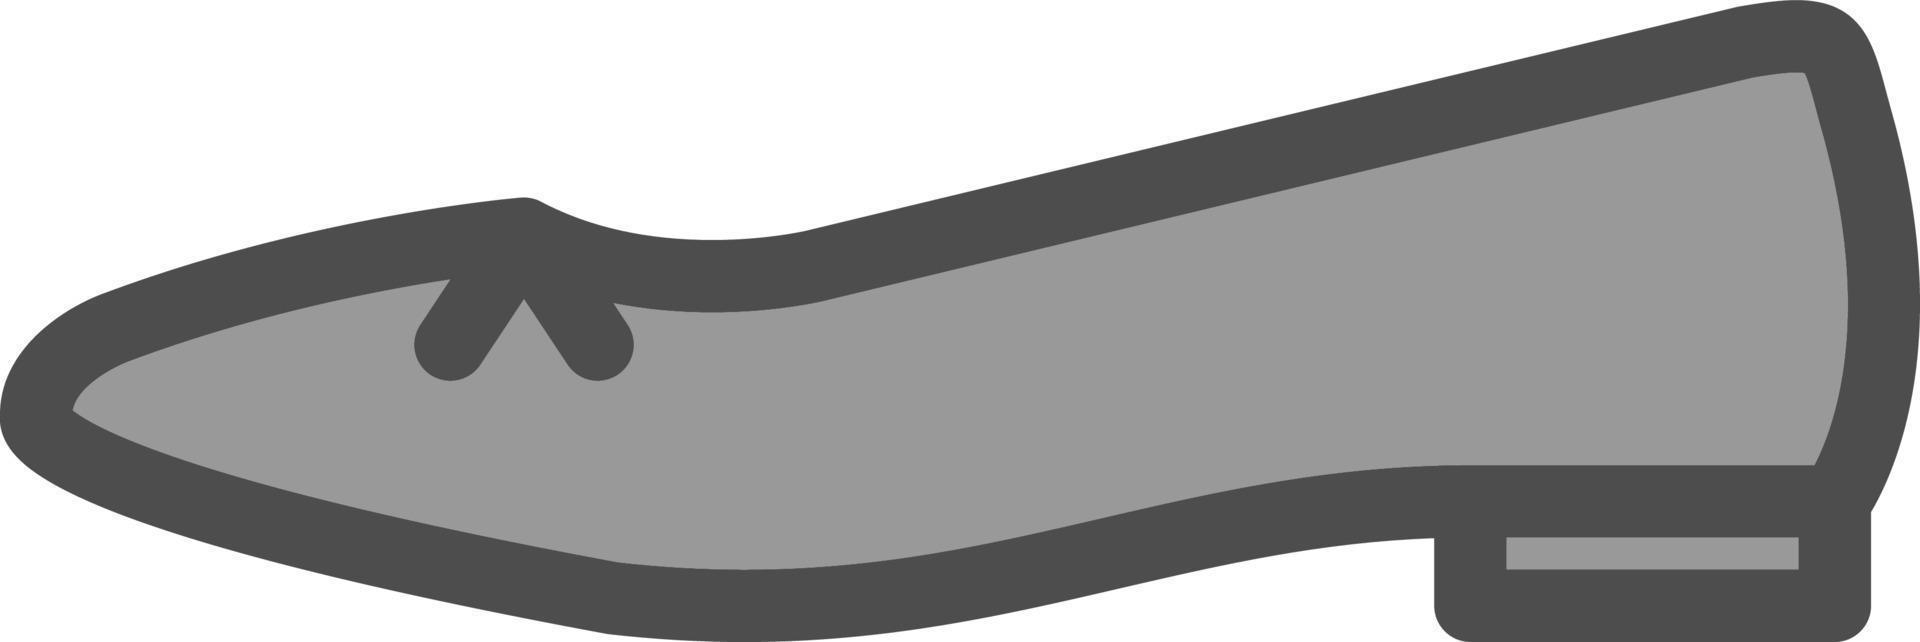 Flache Schuhe Vektor-Icon-Design vektor